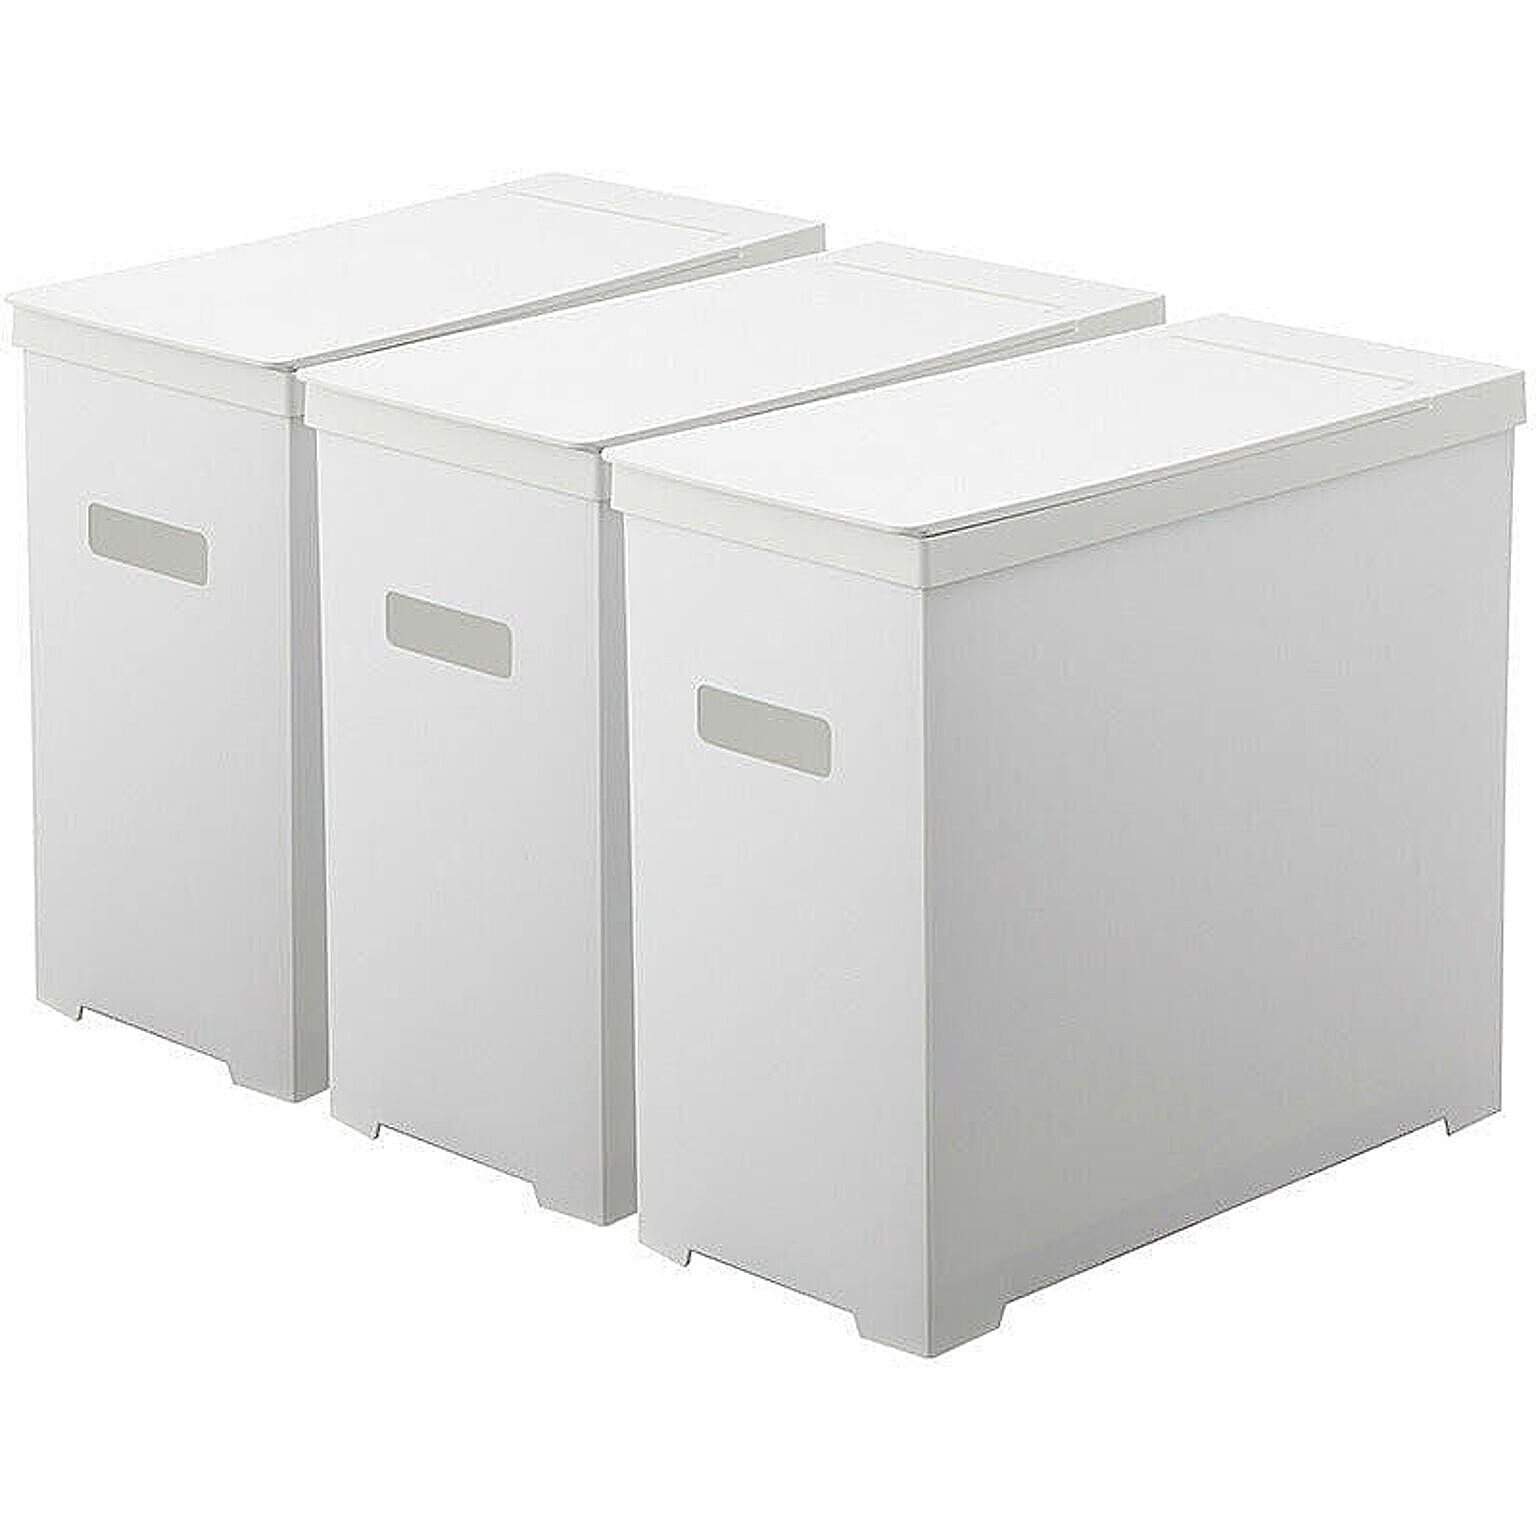 シンク下蓋付きゴミ箱 (3個組)  UNDER SINK TRASH CAN WITH LID 45リットル/ゴミ箱/ごみ箱